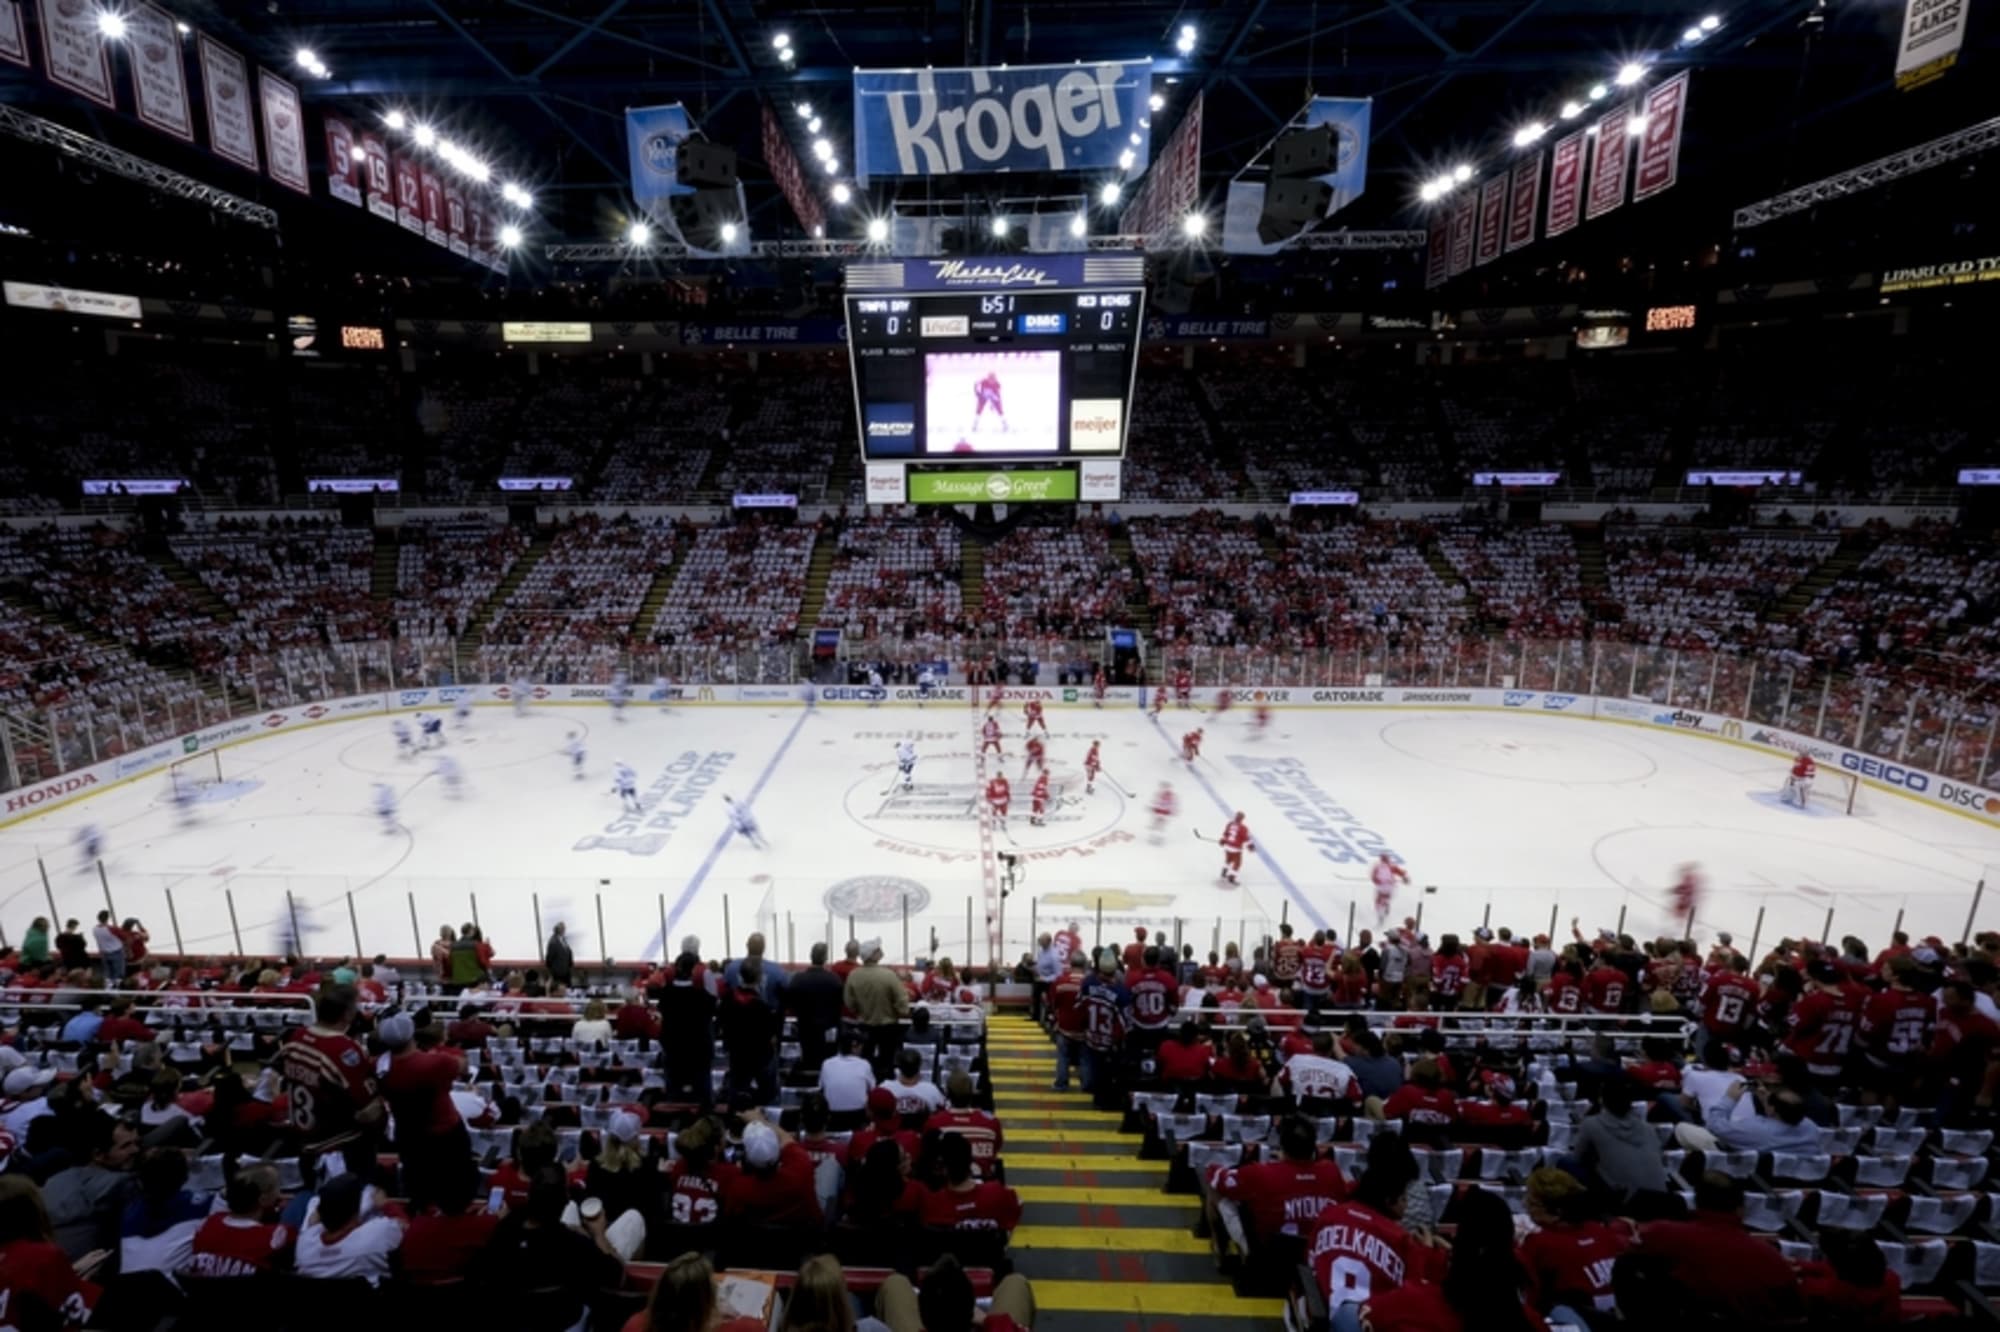 File:Detroit Red Wings vs. Pittsburgh Penguins, Joe Louis Arena